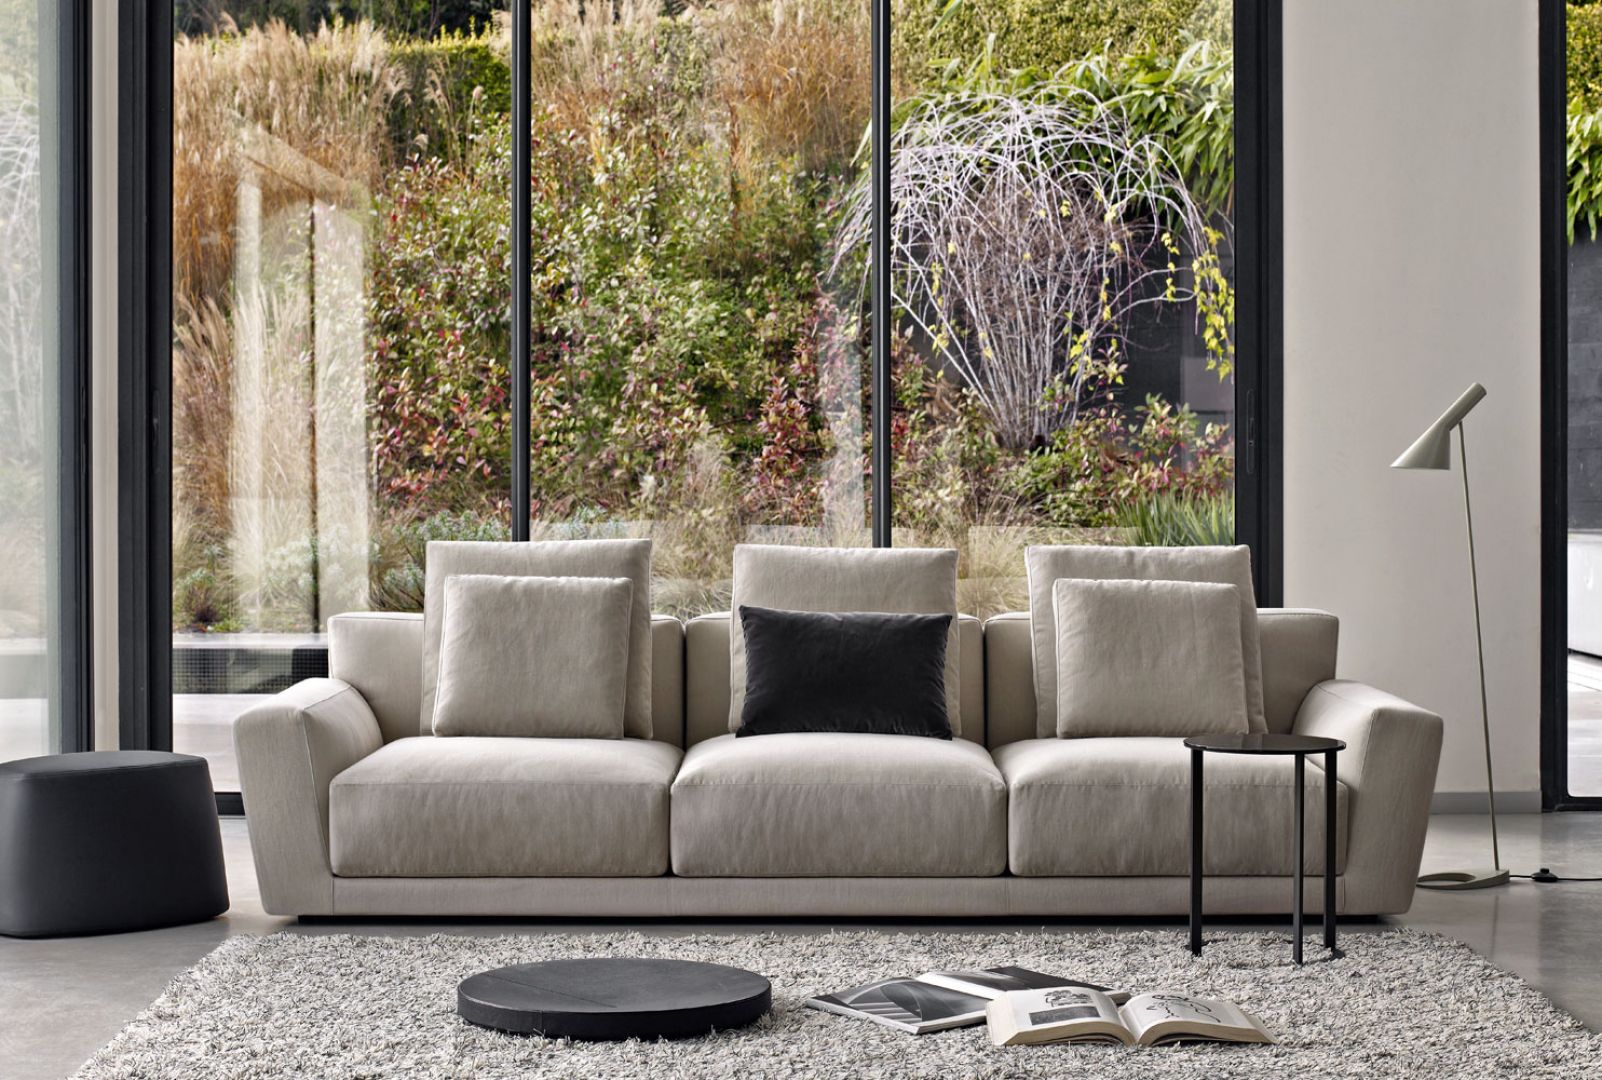 Sofa z dużymi, miękkimi poduchami na oparciu i ciepłym kolorze szarym, lekko wymieszany z beżem. Fot. B&B italia